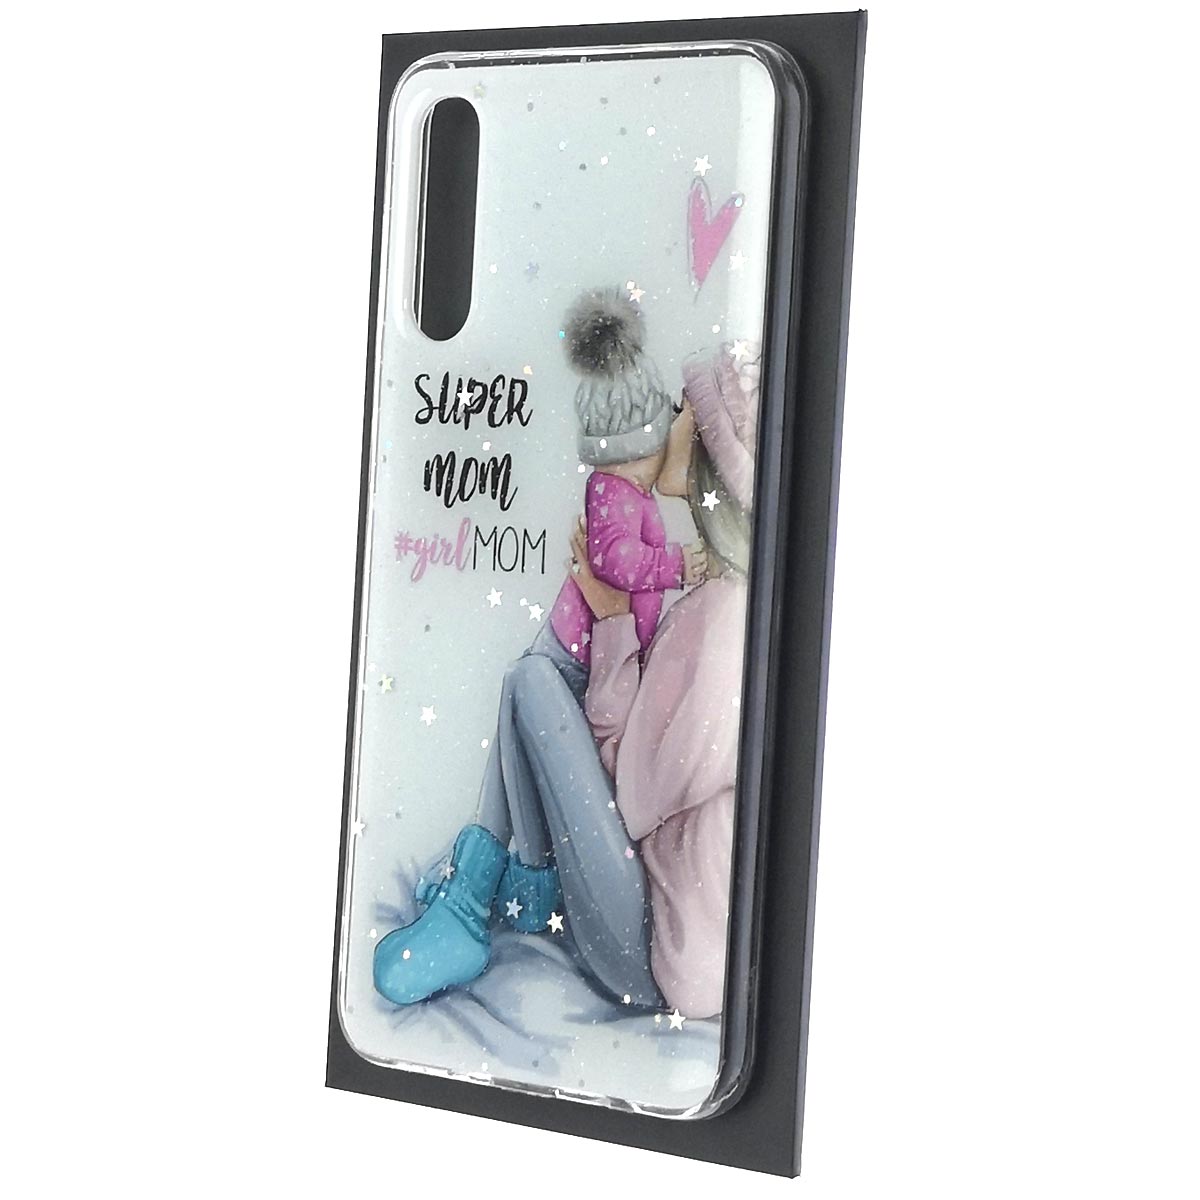 Чехол накладка Vinil для SAMSUNG Galaxy A50 (SM-A505), A30s (SM-A307), A50s (SM-A507), силикон, блестки, глянцевый, рисунок Super mom girl MOM